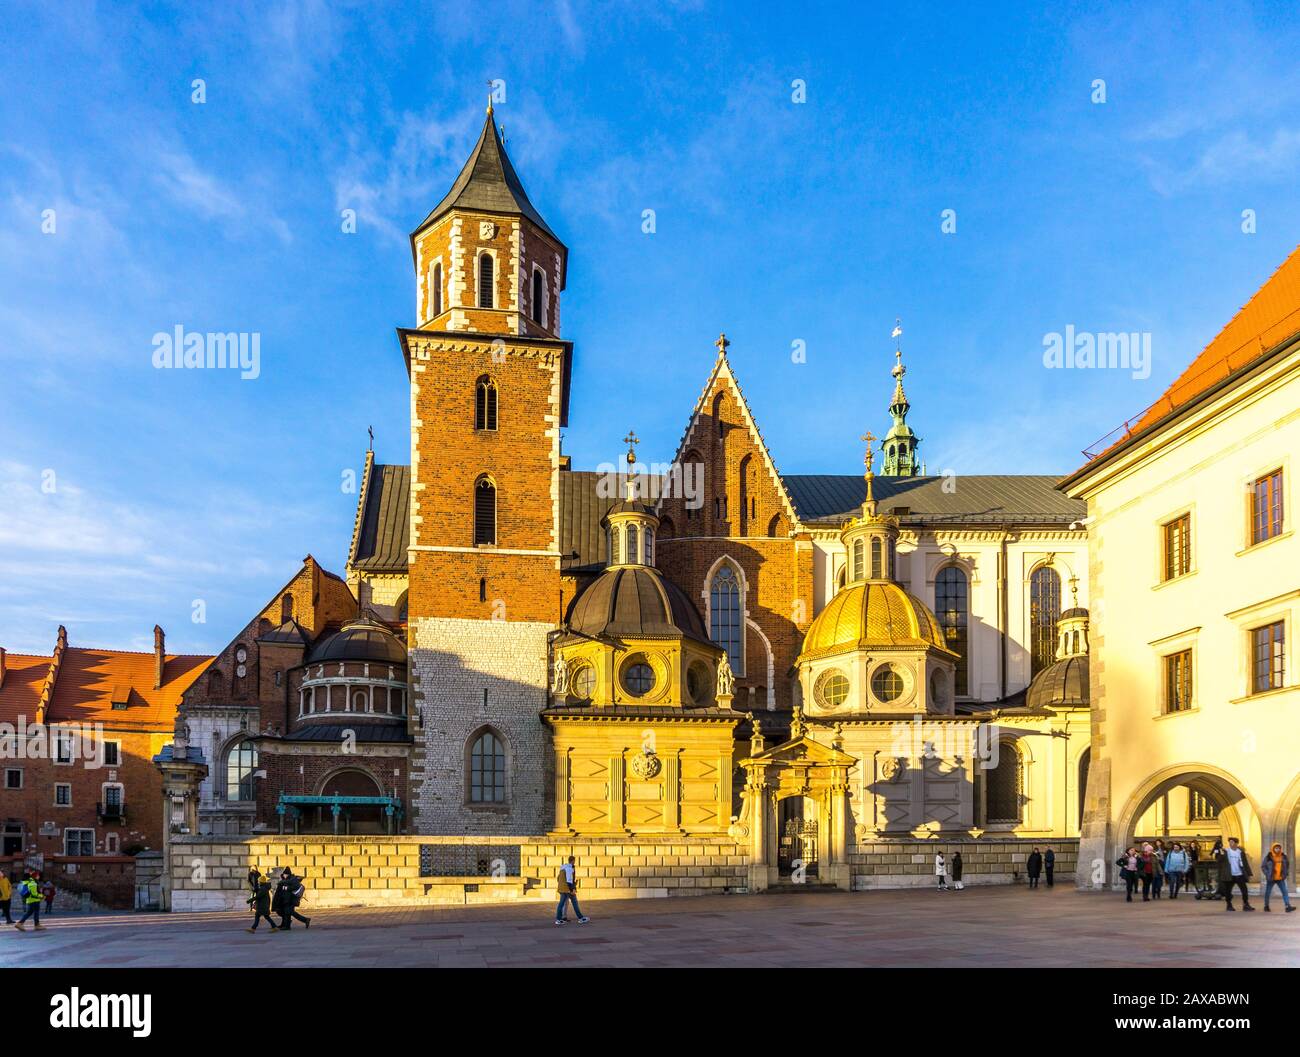 Cattedrale di Wael, Castello reale di Wawel, Cracovia, Polonia, Europa Foto Stock